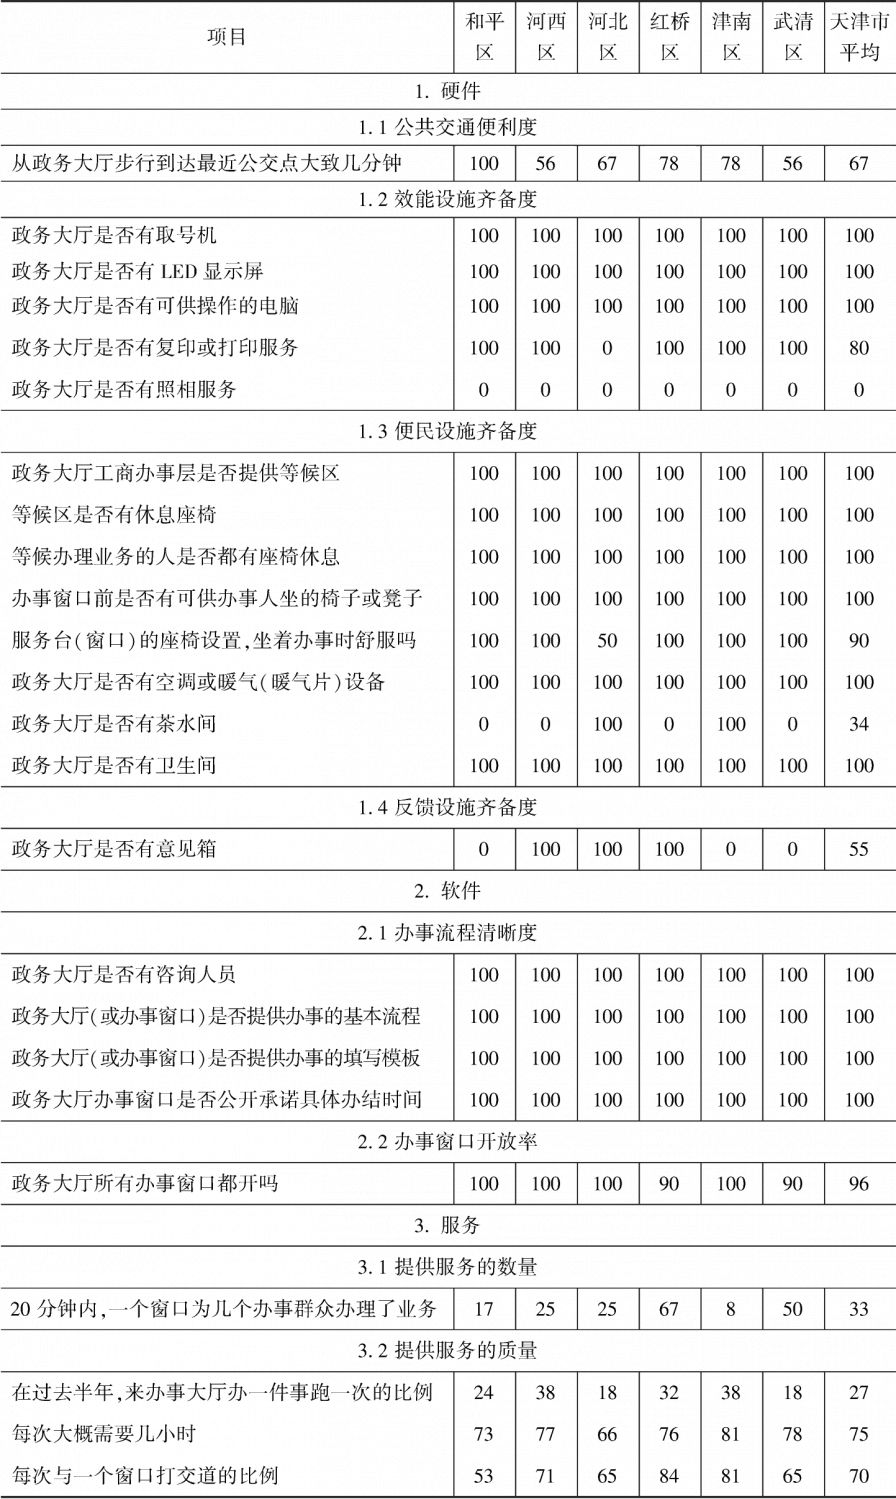 附表4-3 天津市政务环境得分